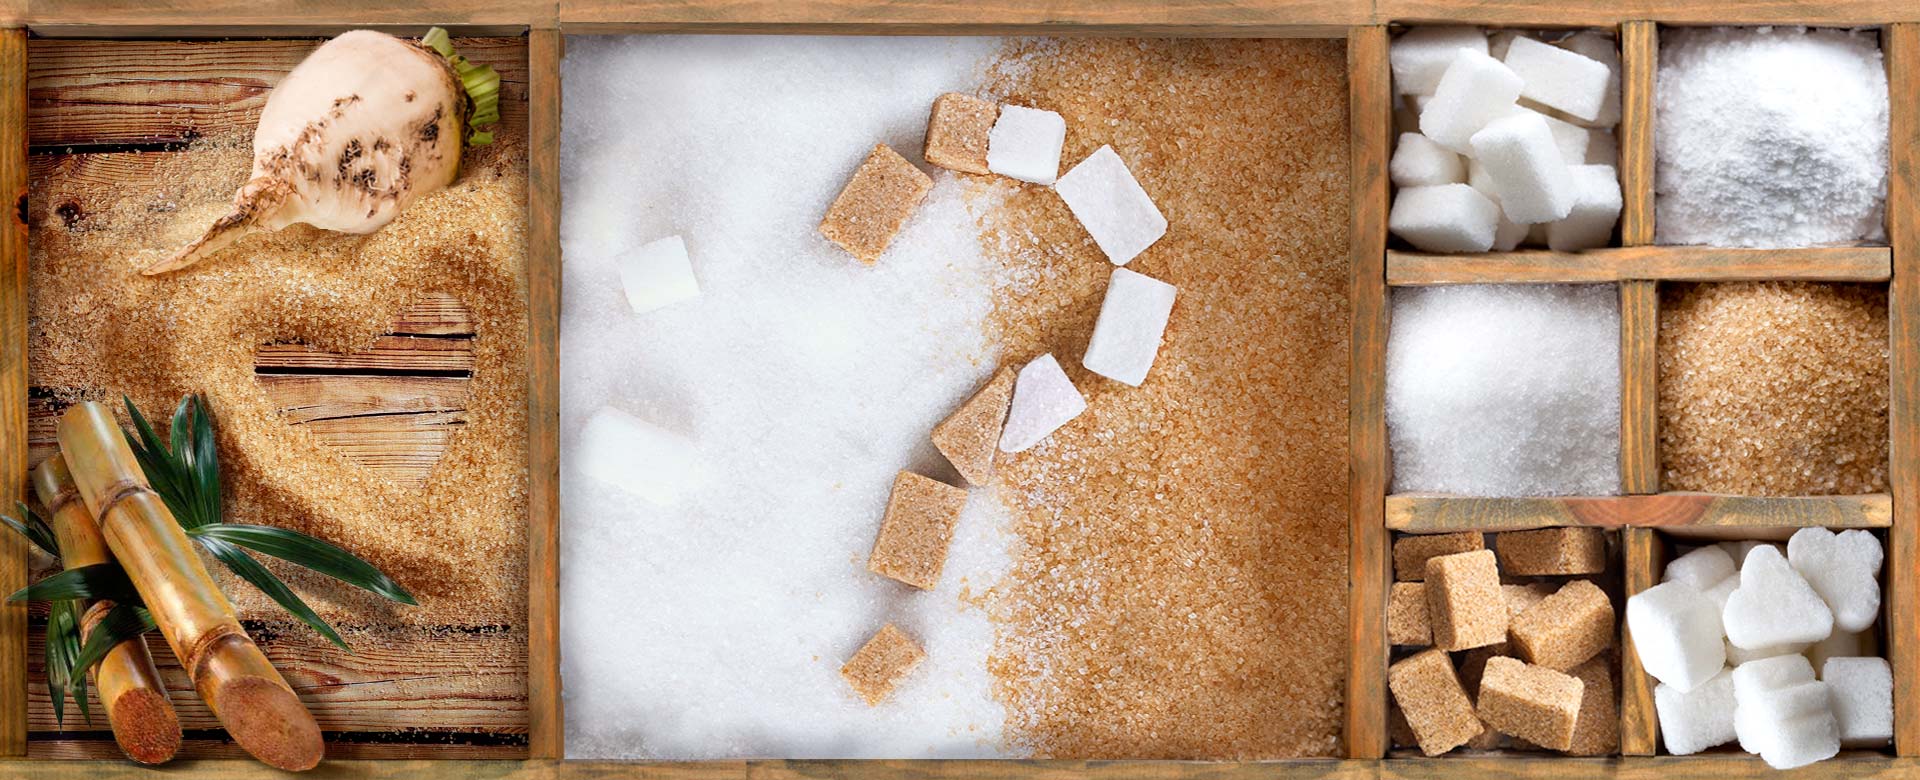 Коя от посочените островни държави е голям производител на захар